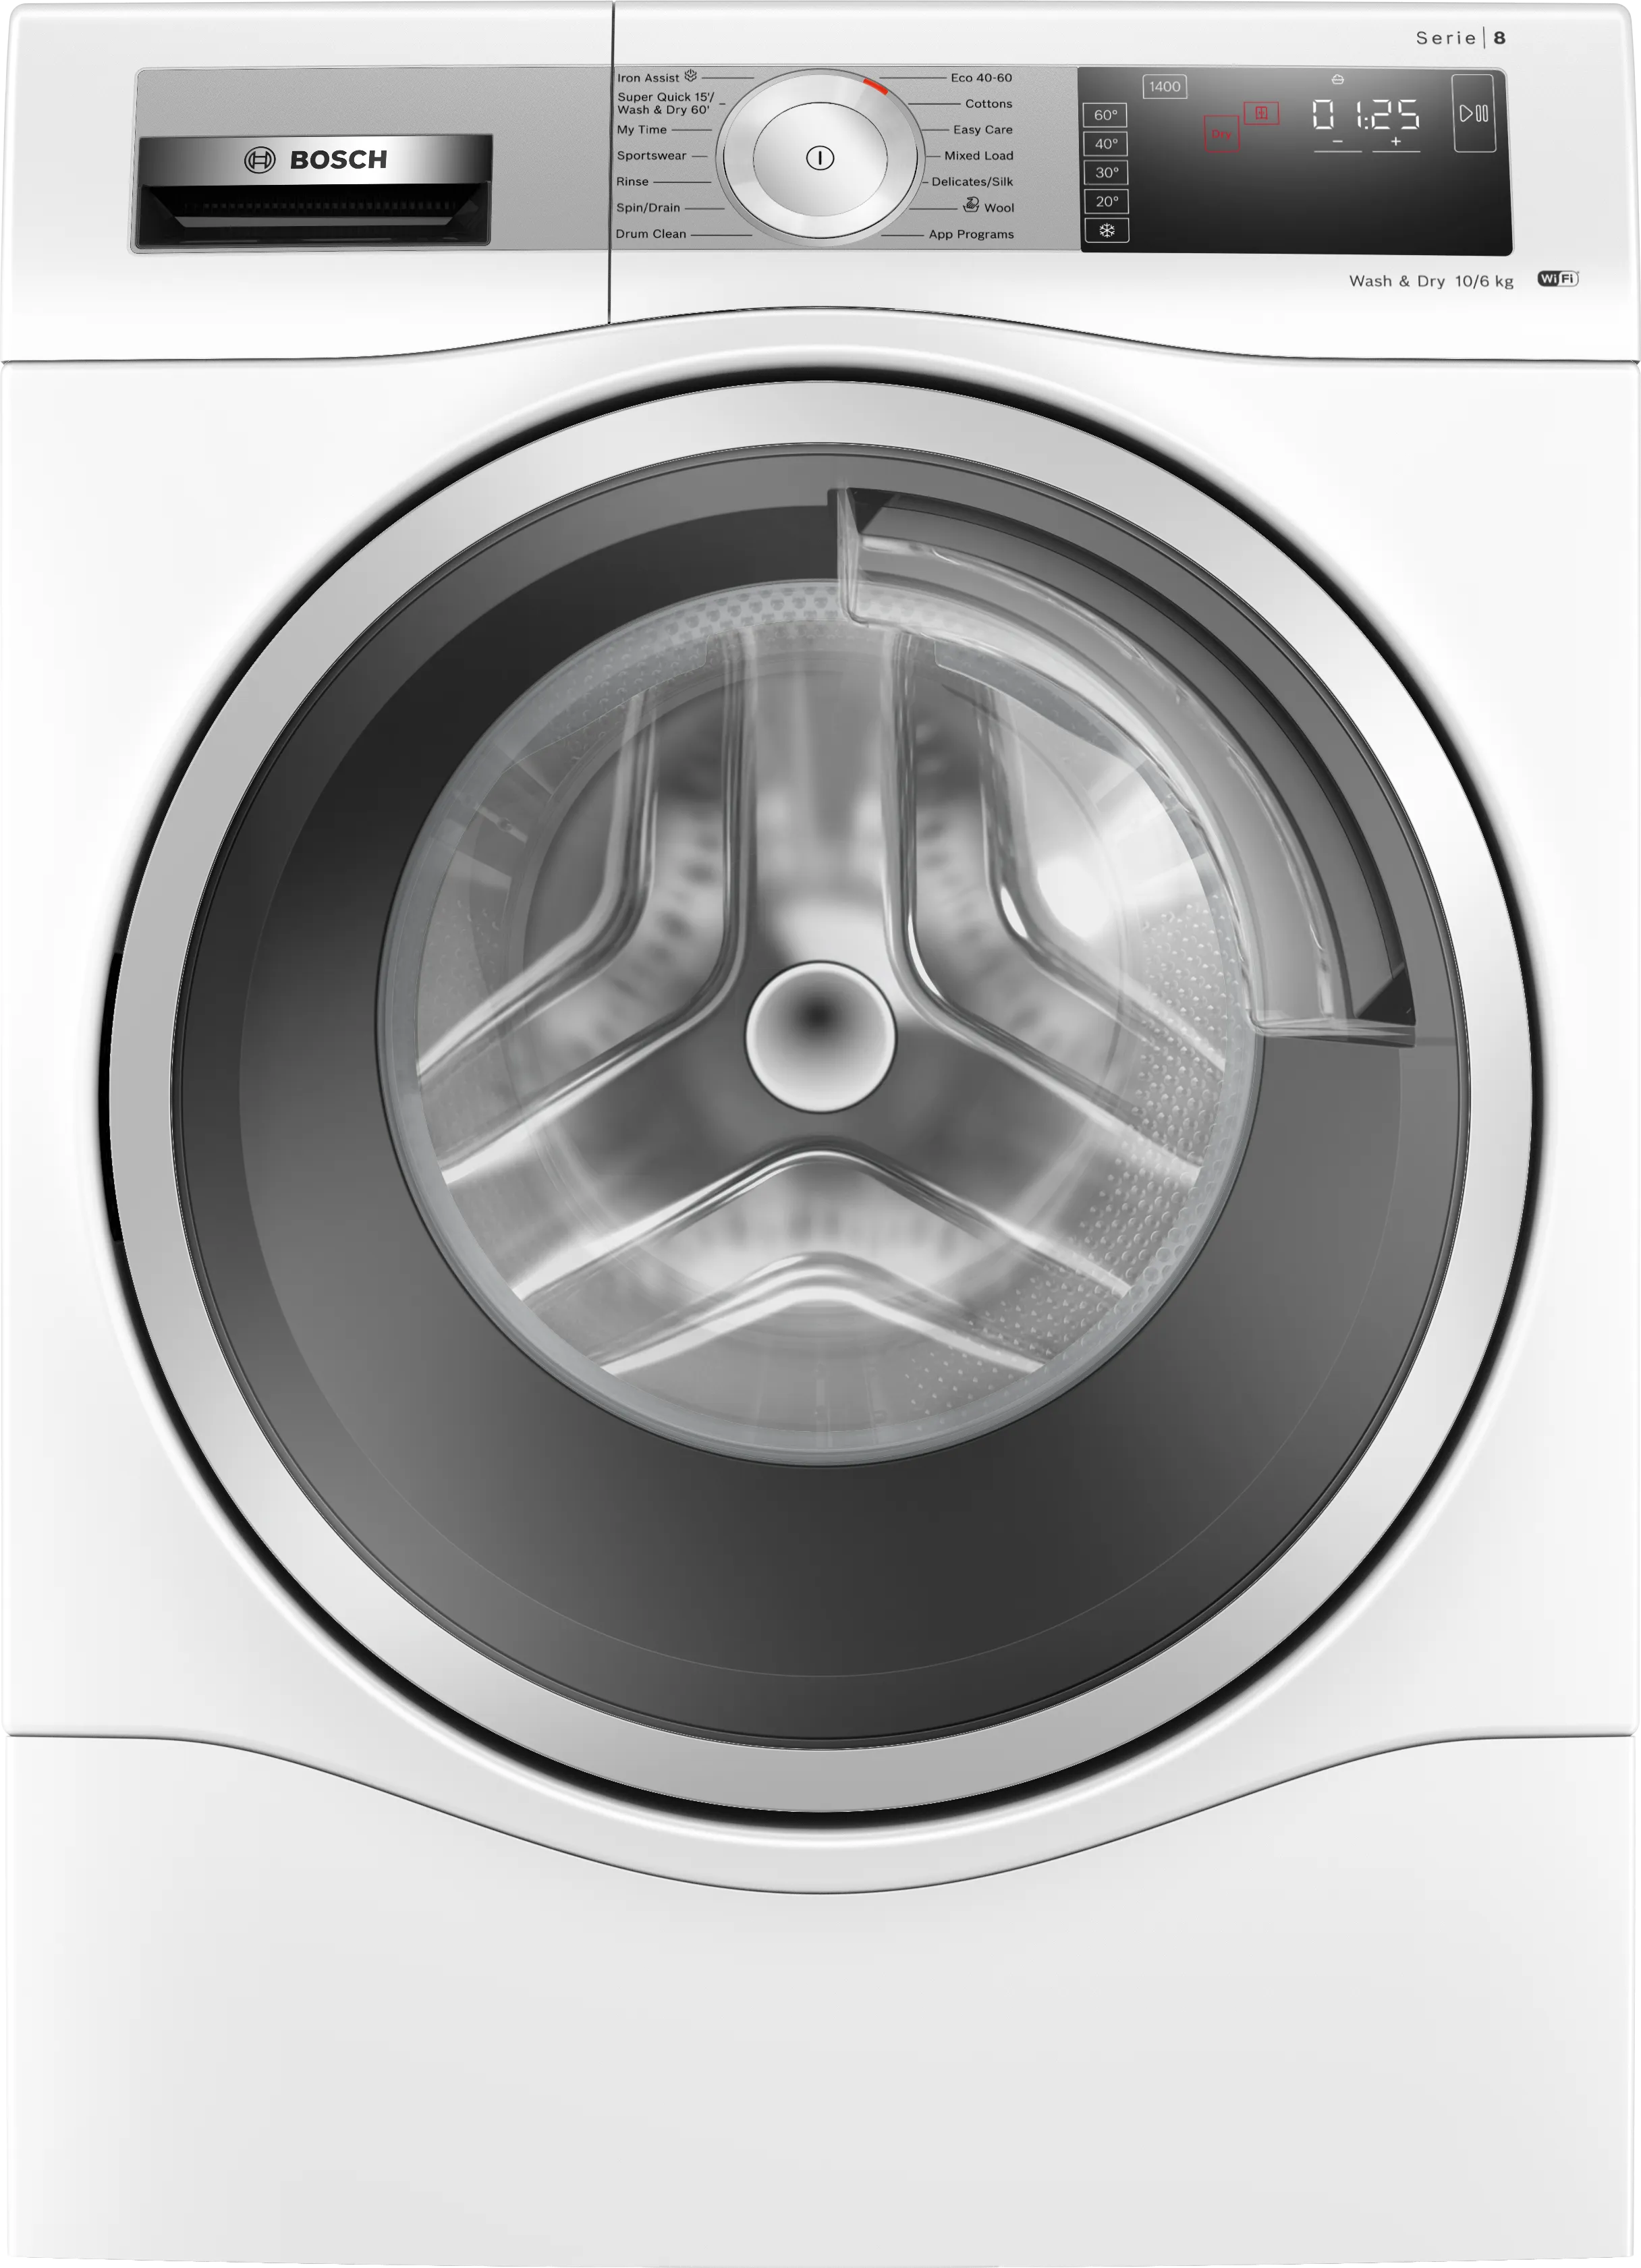 Series 8 Washer dryer 10/6 kg 1400 rpm 